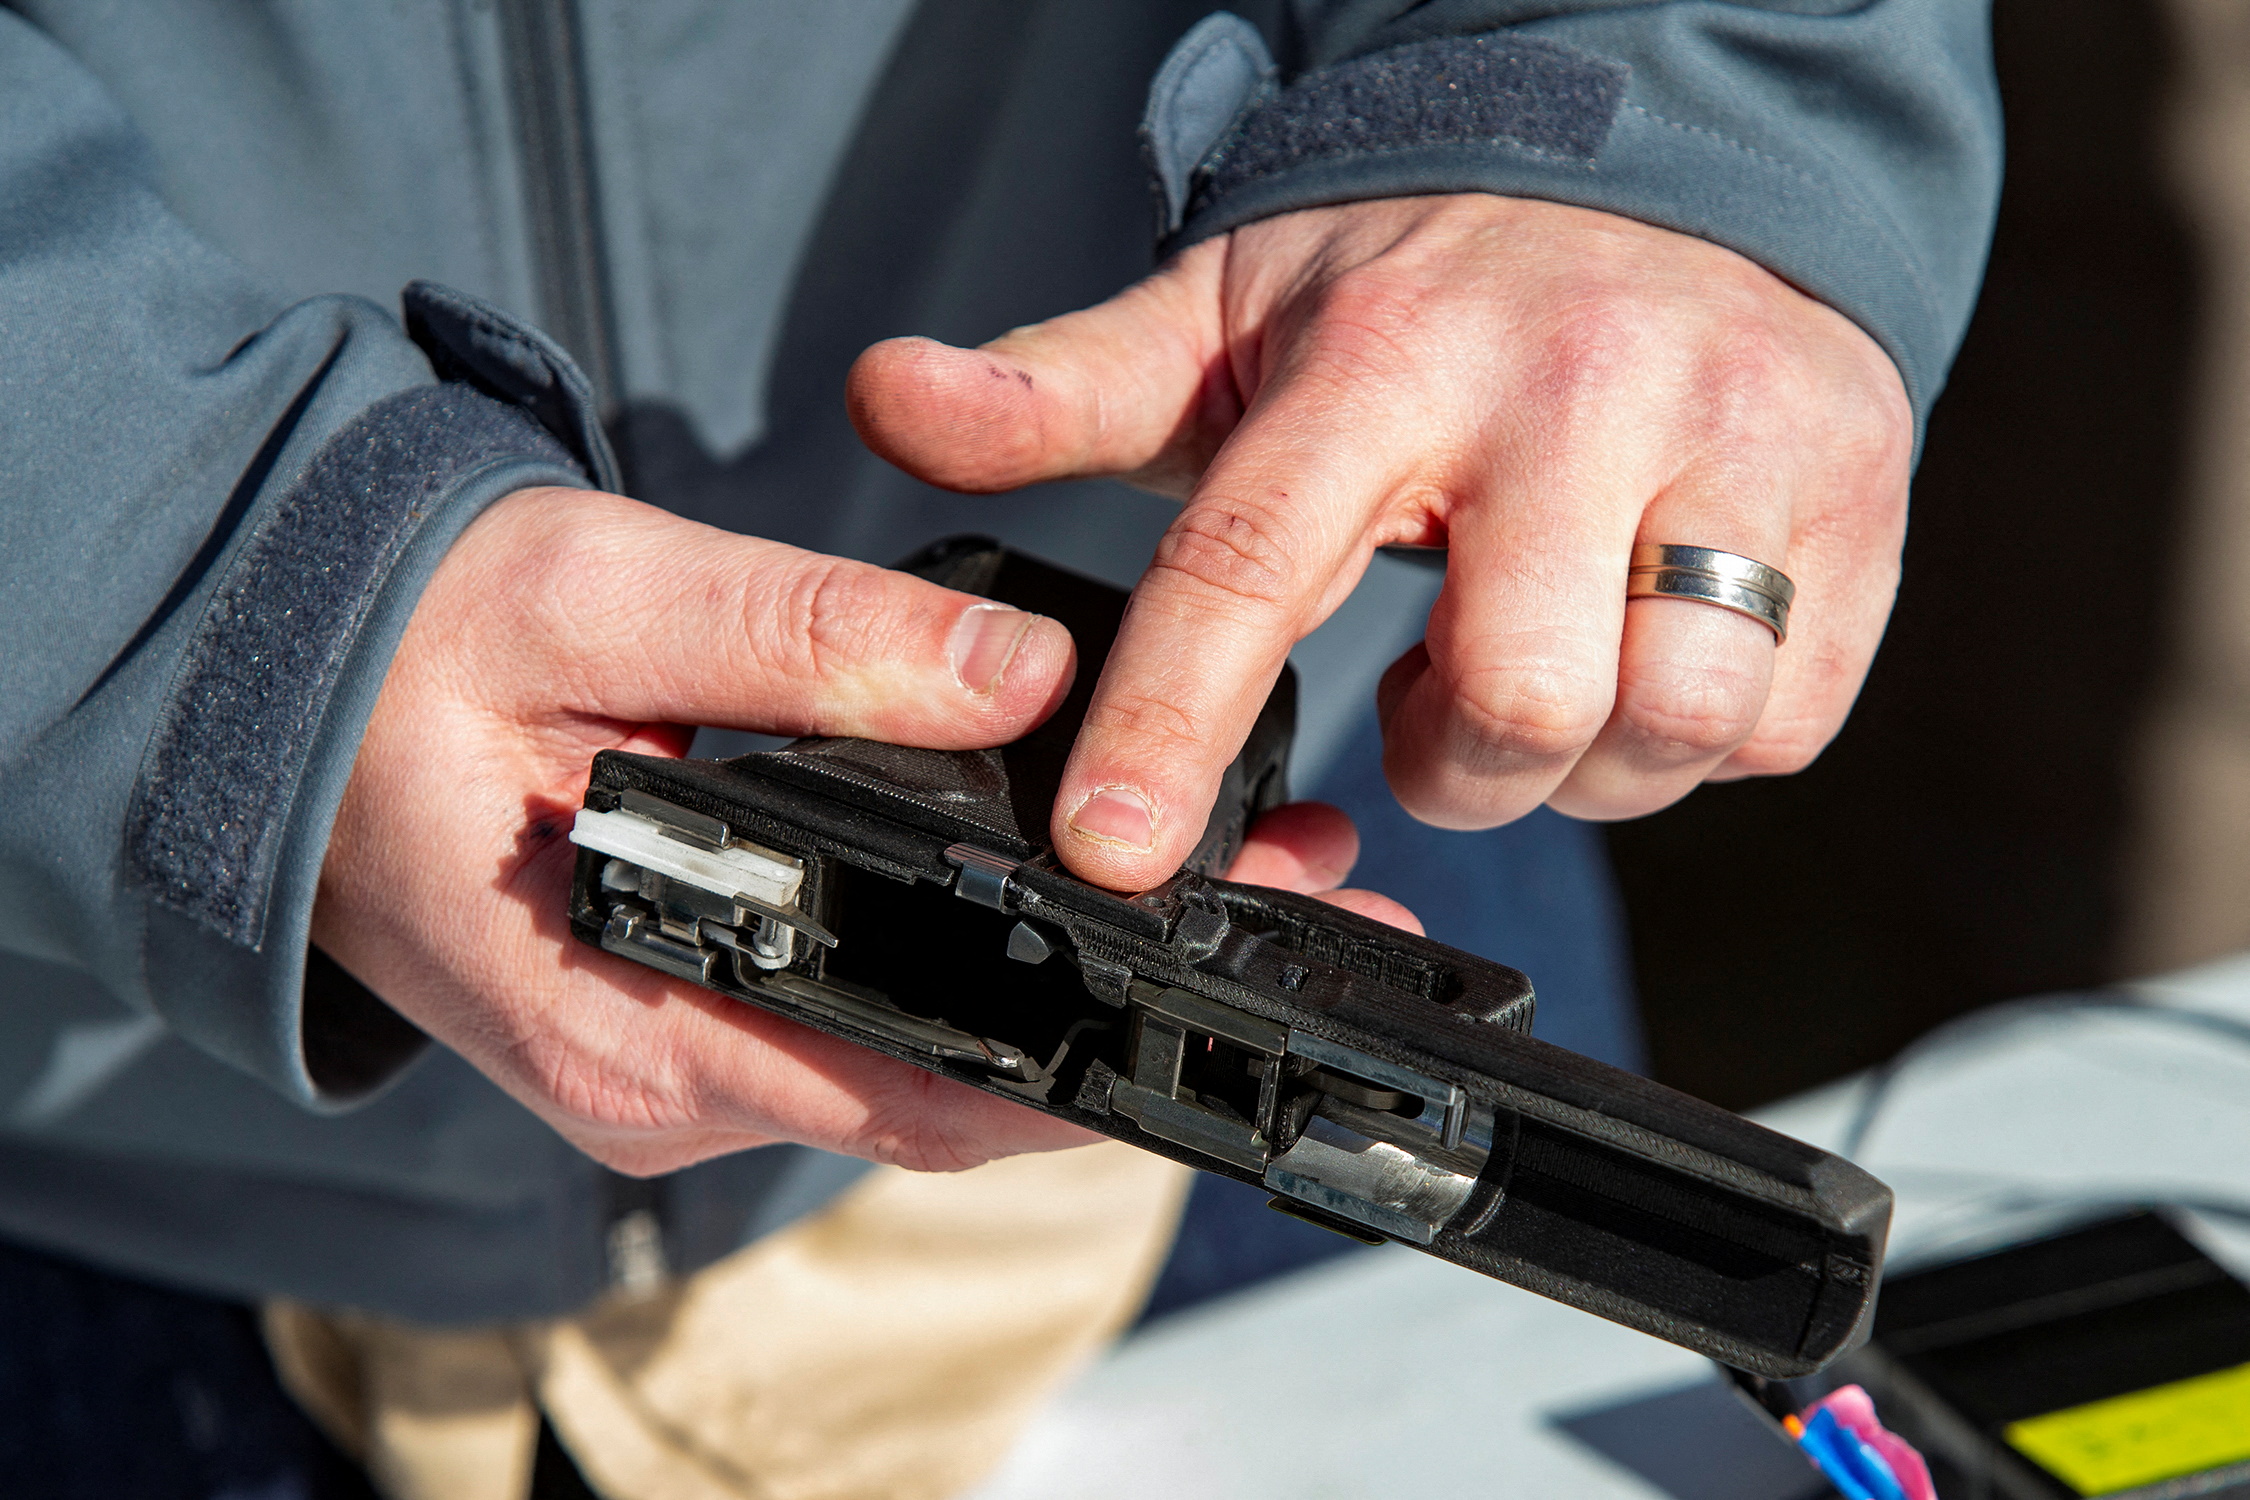 LodeStar unveils its 9mm smart gun in Boise